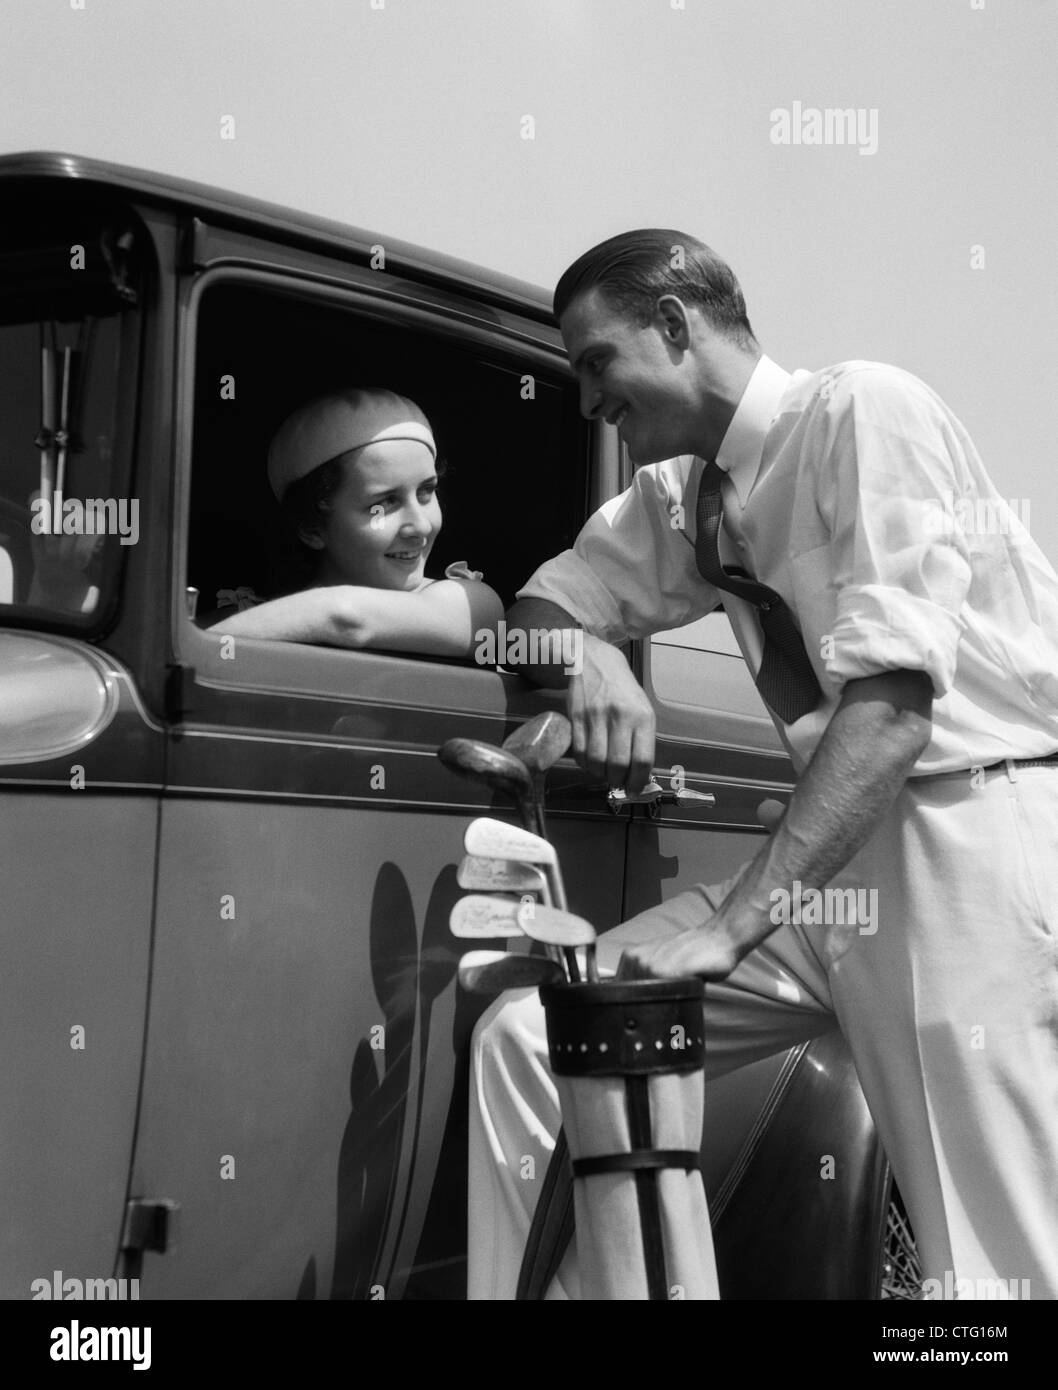 1930 MUJER EN EL ASIENTO DEL CONDUCTOR DEL COCHE DE ASOMARSE A LA VENTANA A HABLAR CON EL HOMBRE DE PIE sosteniendo una bolsa de golf Foto de stock